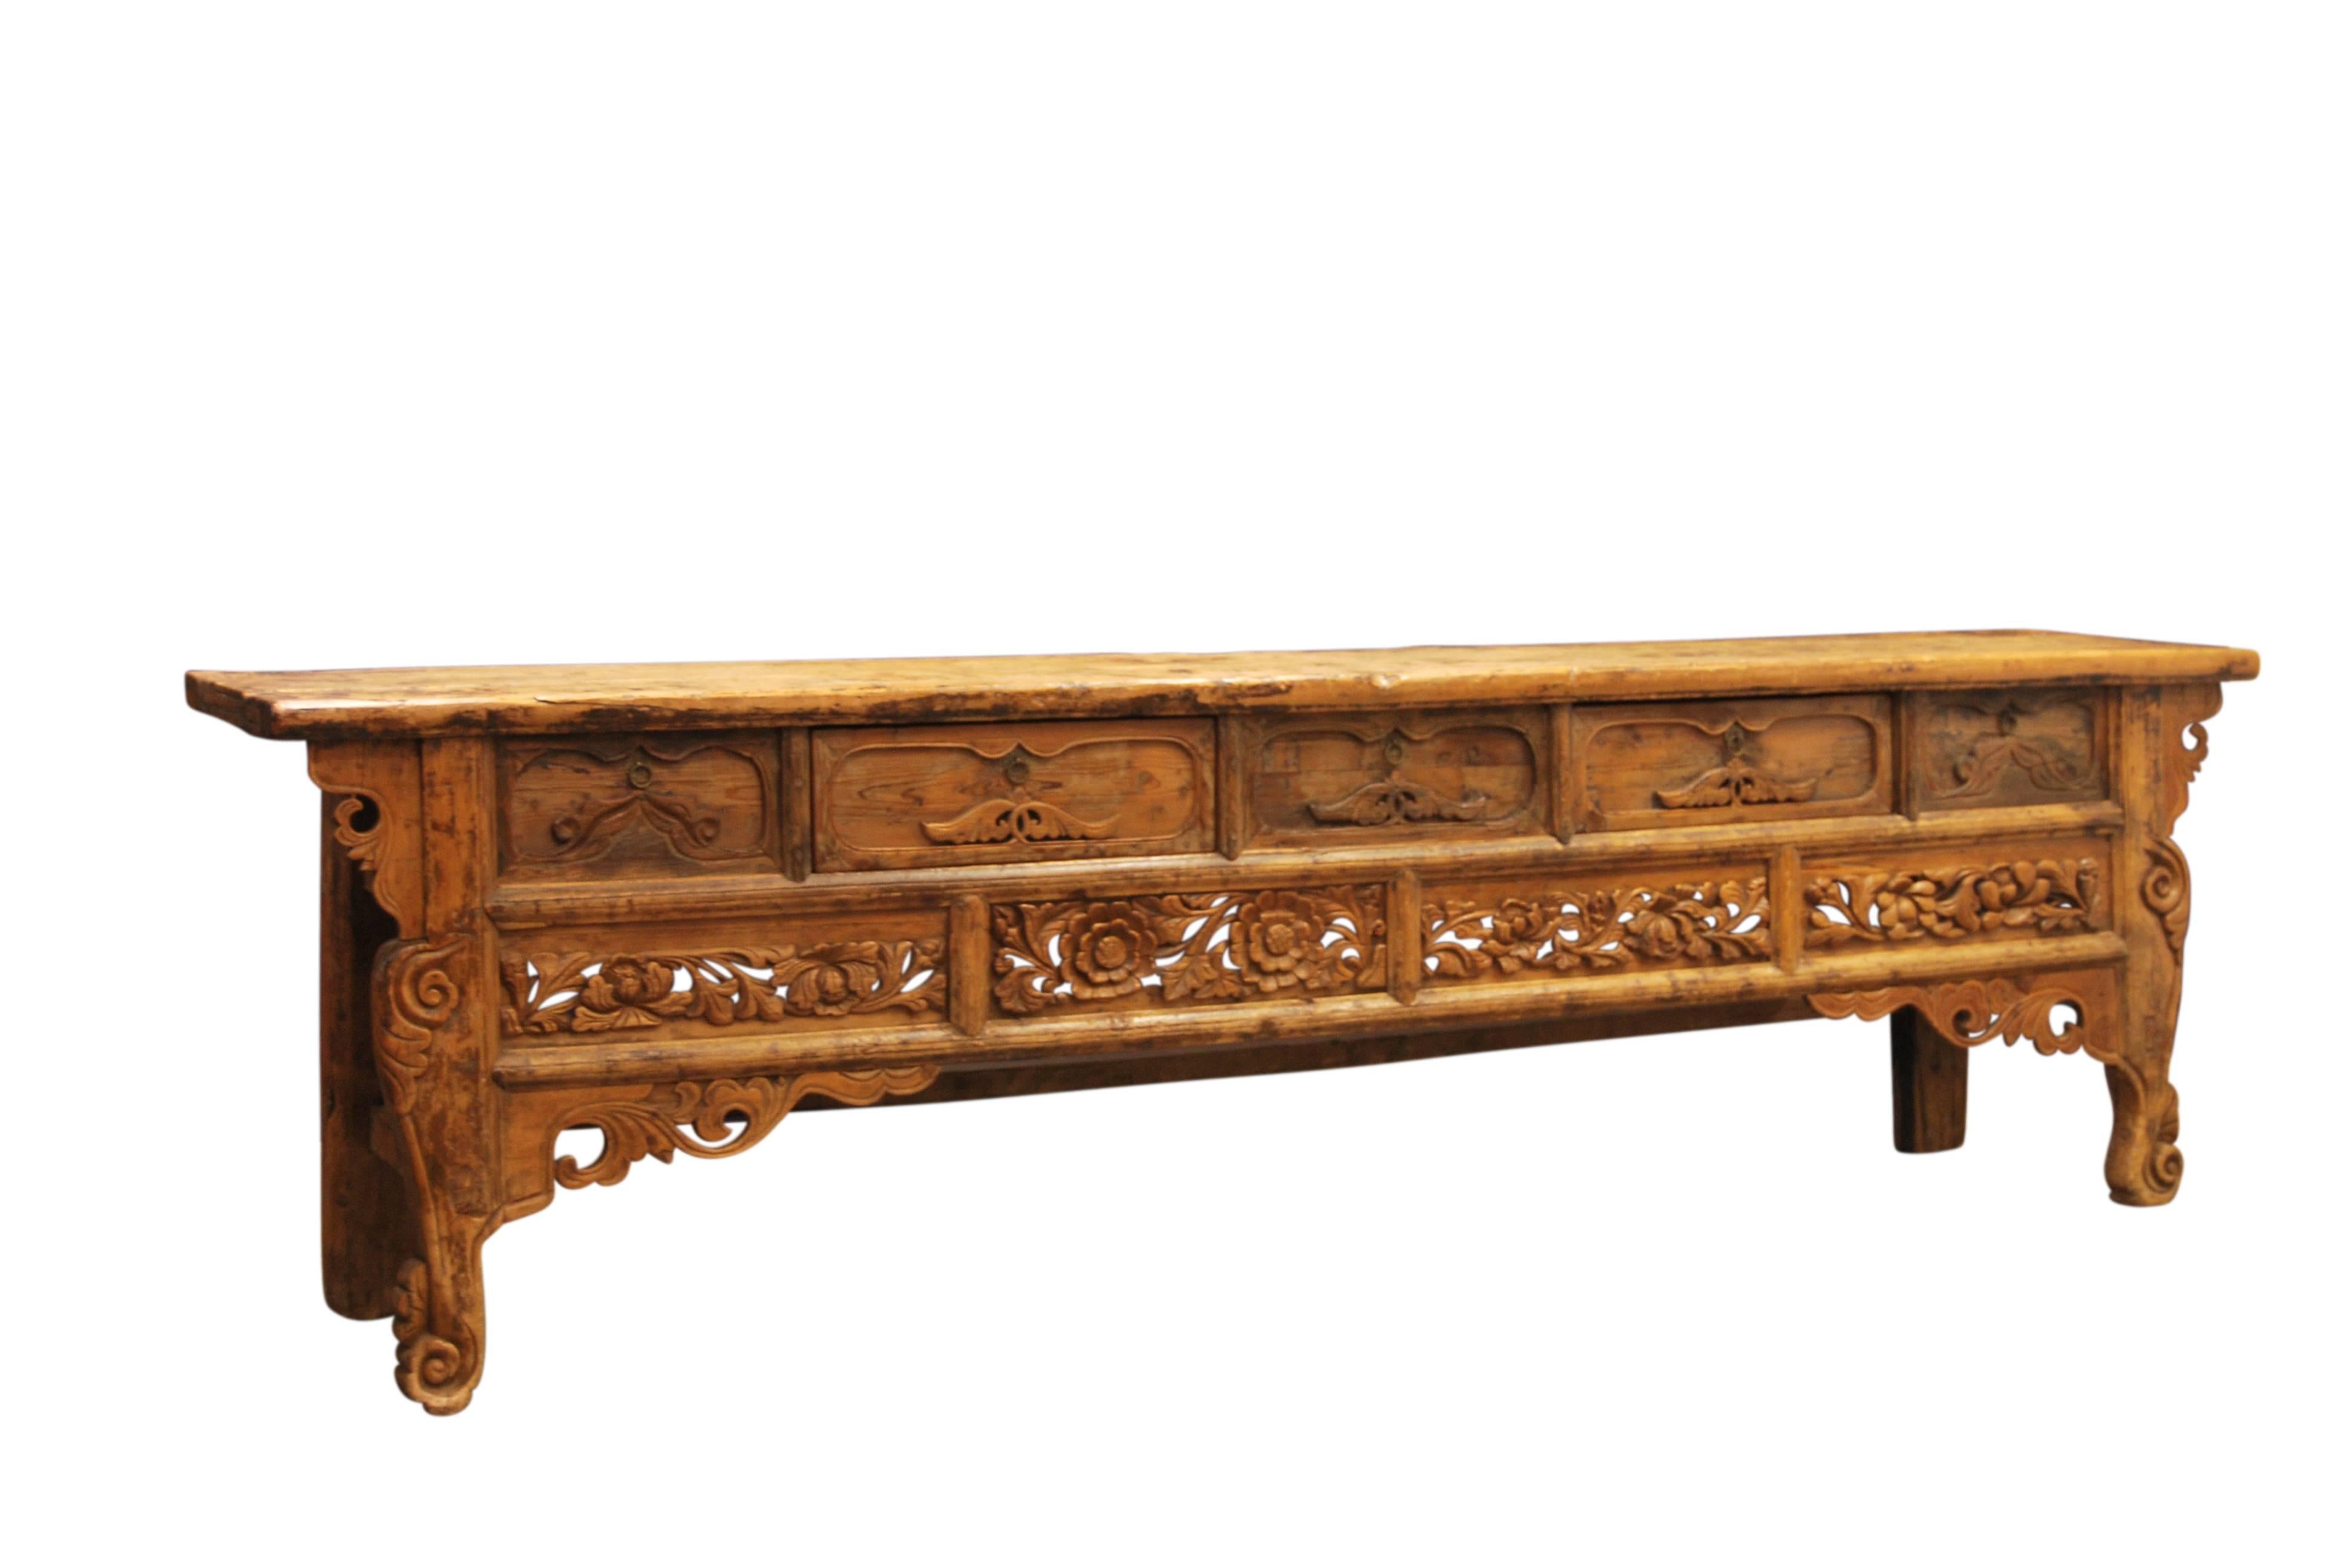 Seltener chinesischer buddhistischer Altartisch aus Bai-mu-Zypressenholz mit einem kunstvollen, tief geschnitzten und durchbrochenen Relief. Außerdem verfügt er über eine florale Schürze und Füße in Schneckenform. Das Holz ist im Laufe der Zeit